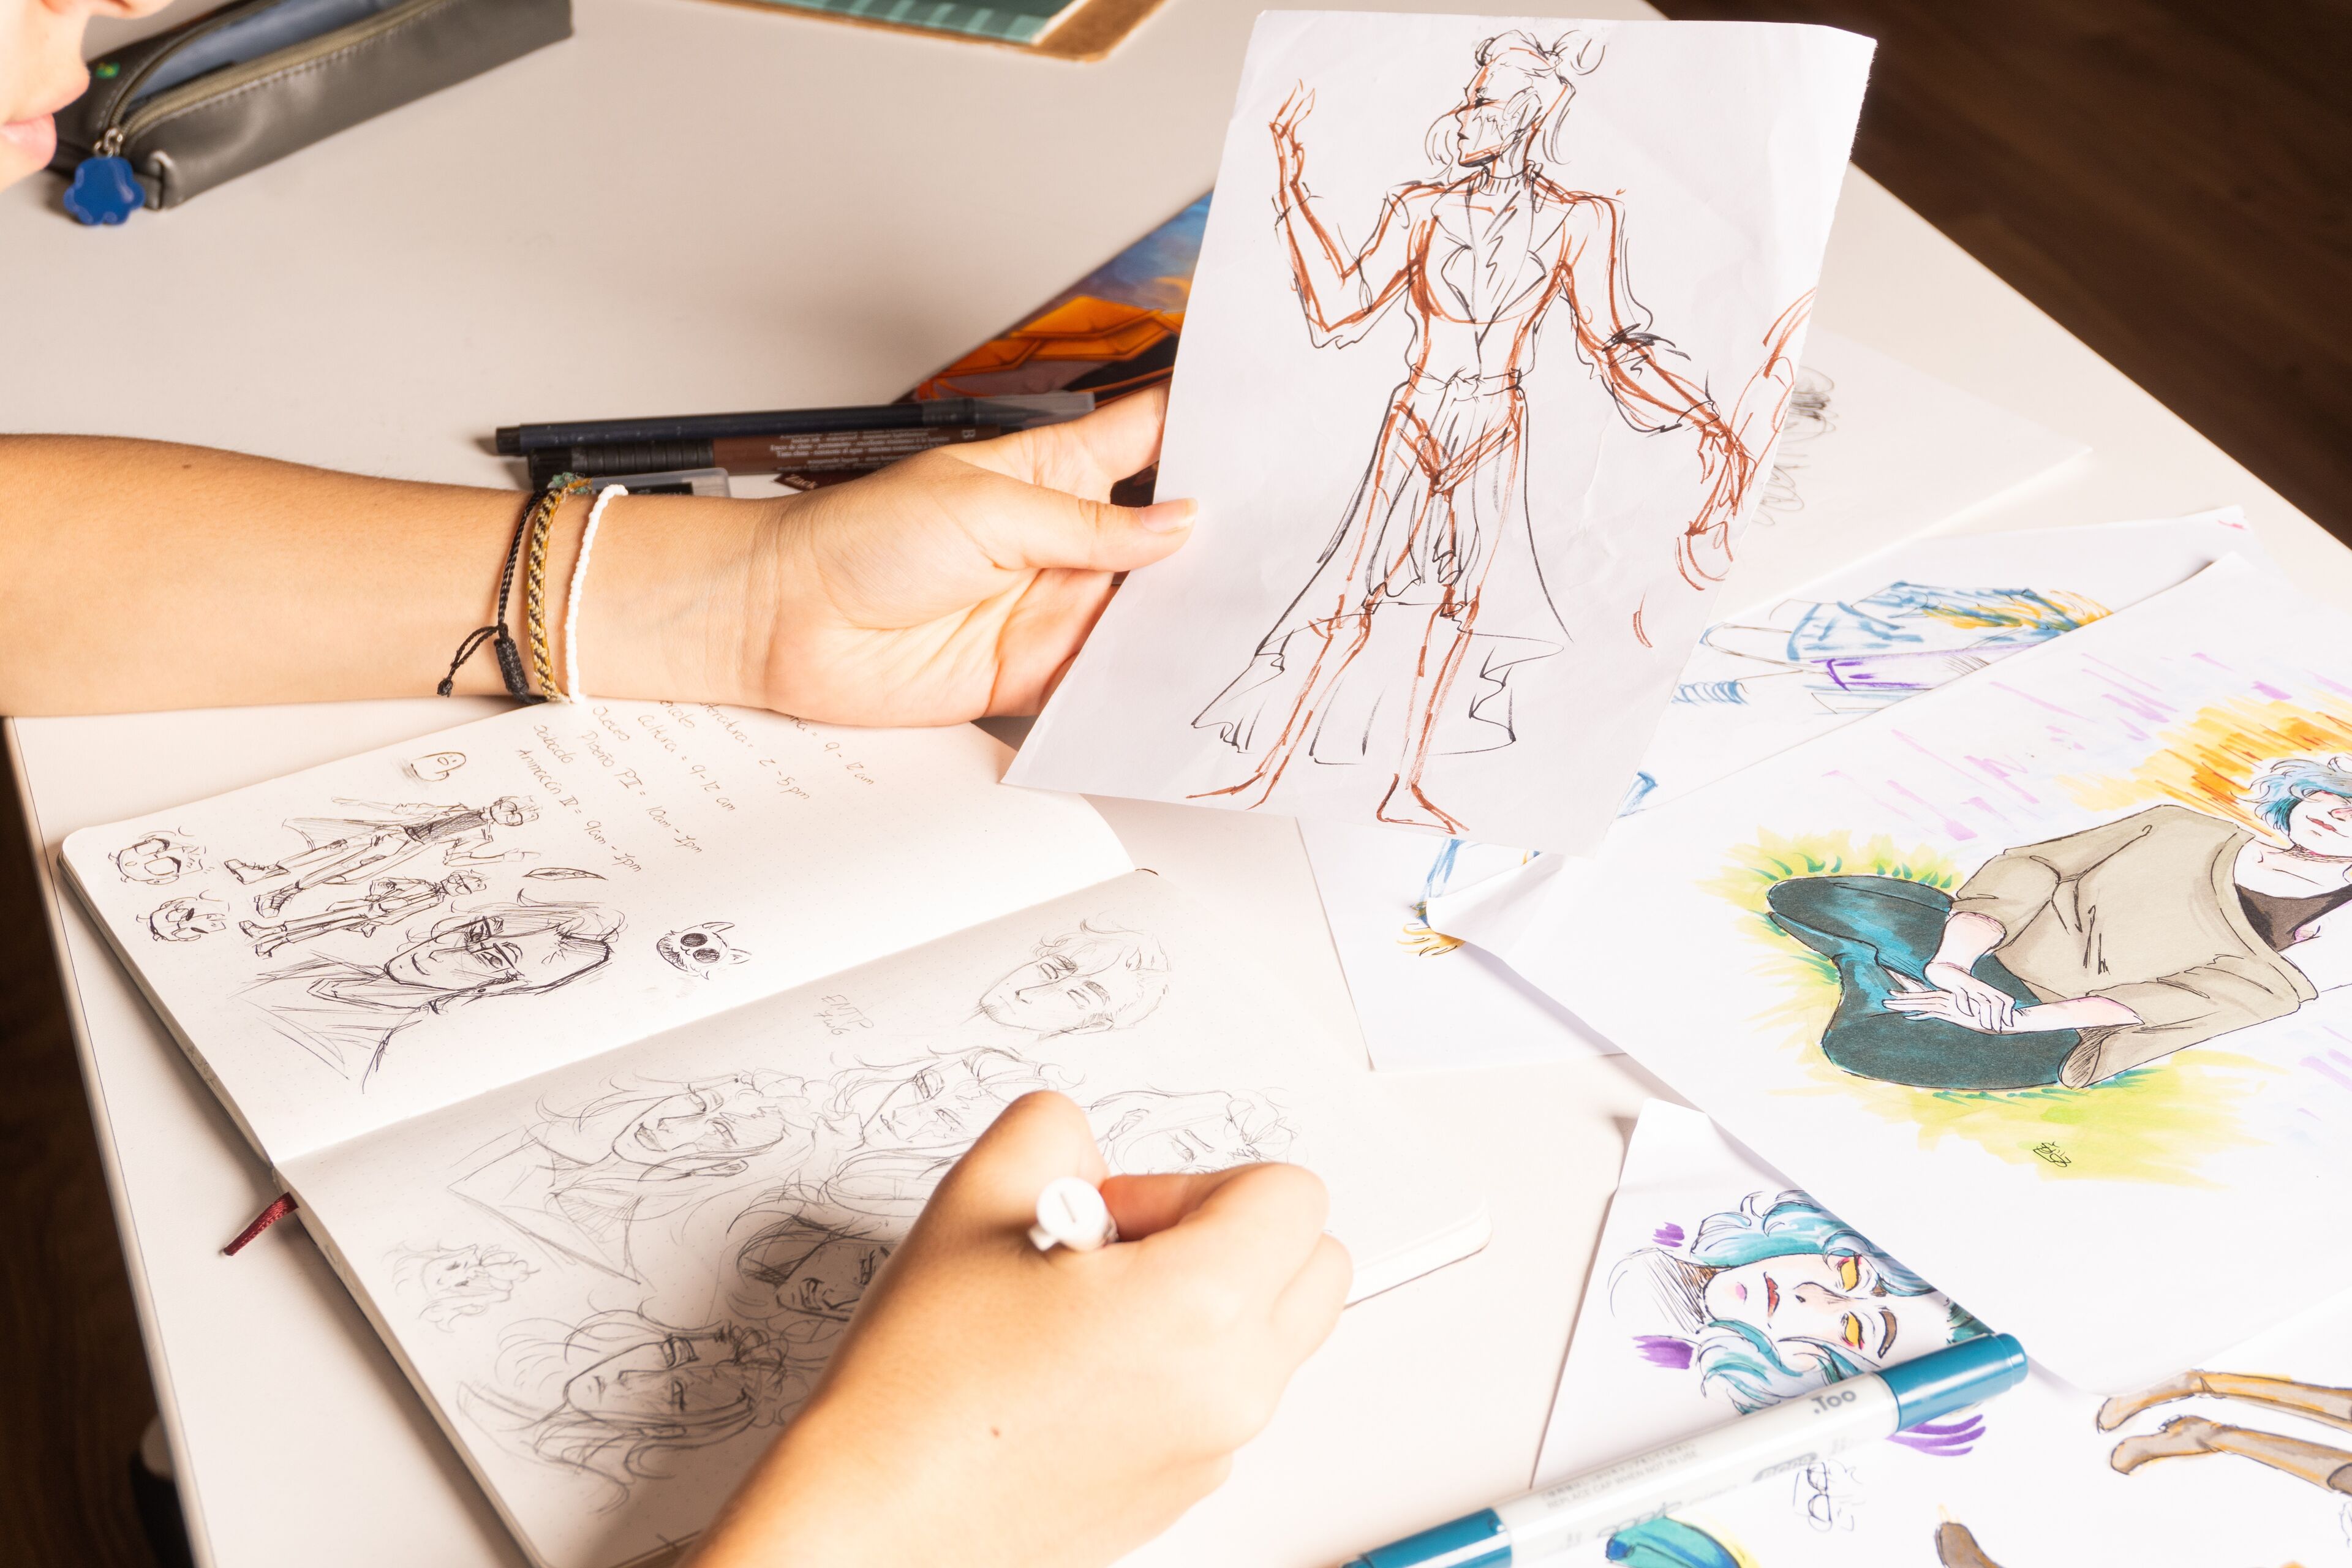 La mano de un artista esboza en un cuaderno rodeado de dibujos de personajes dispersos.